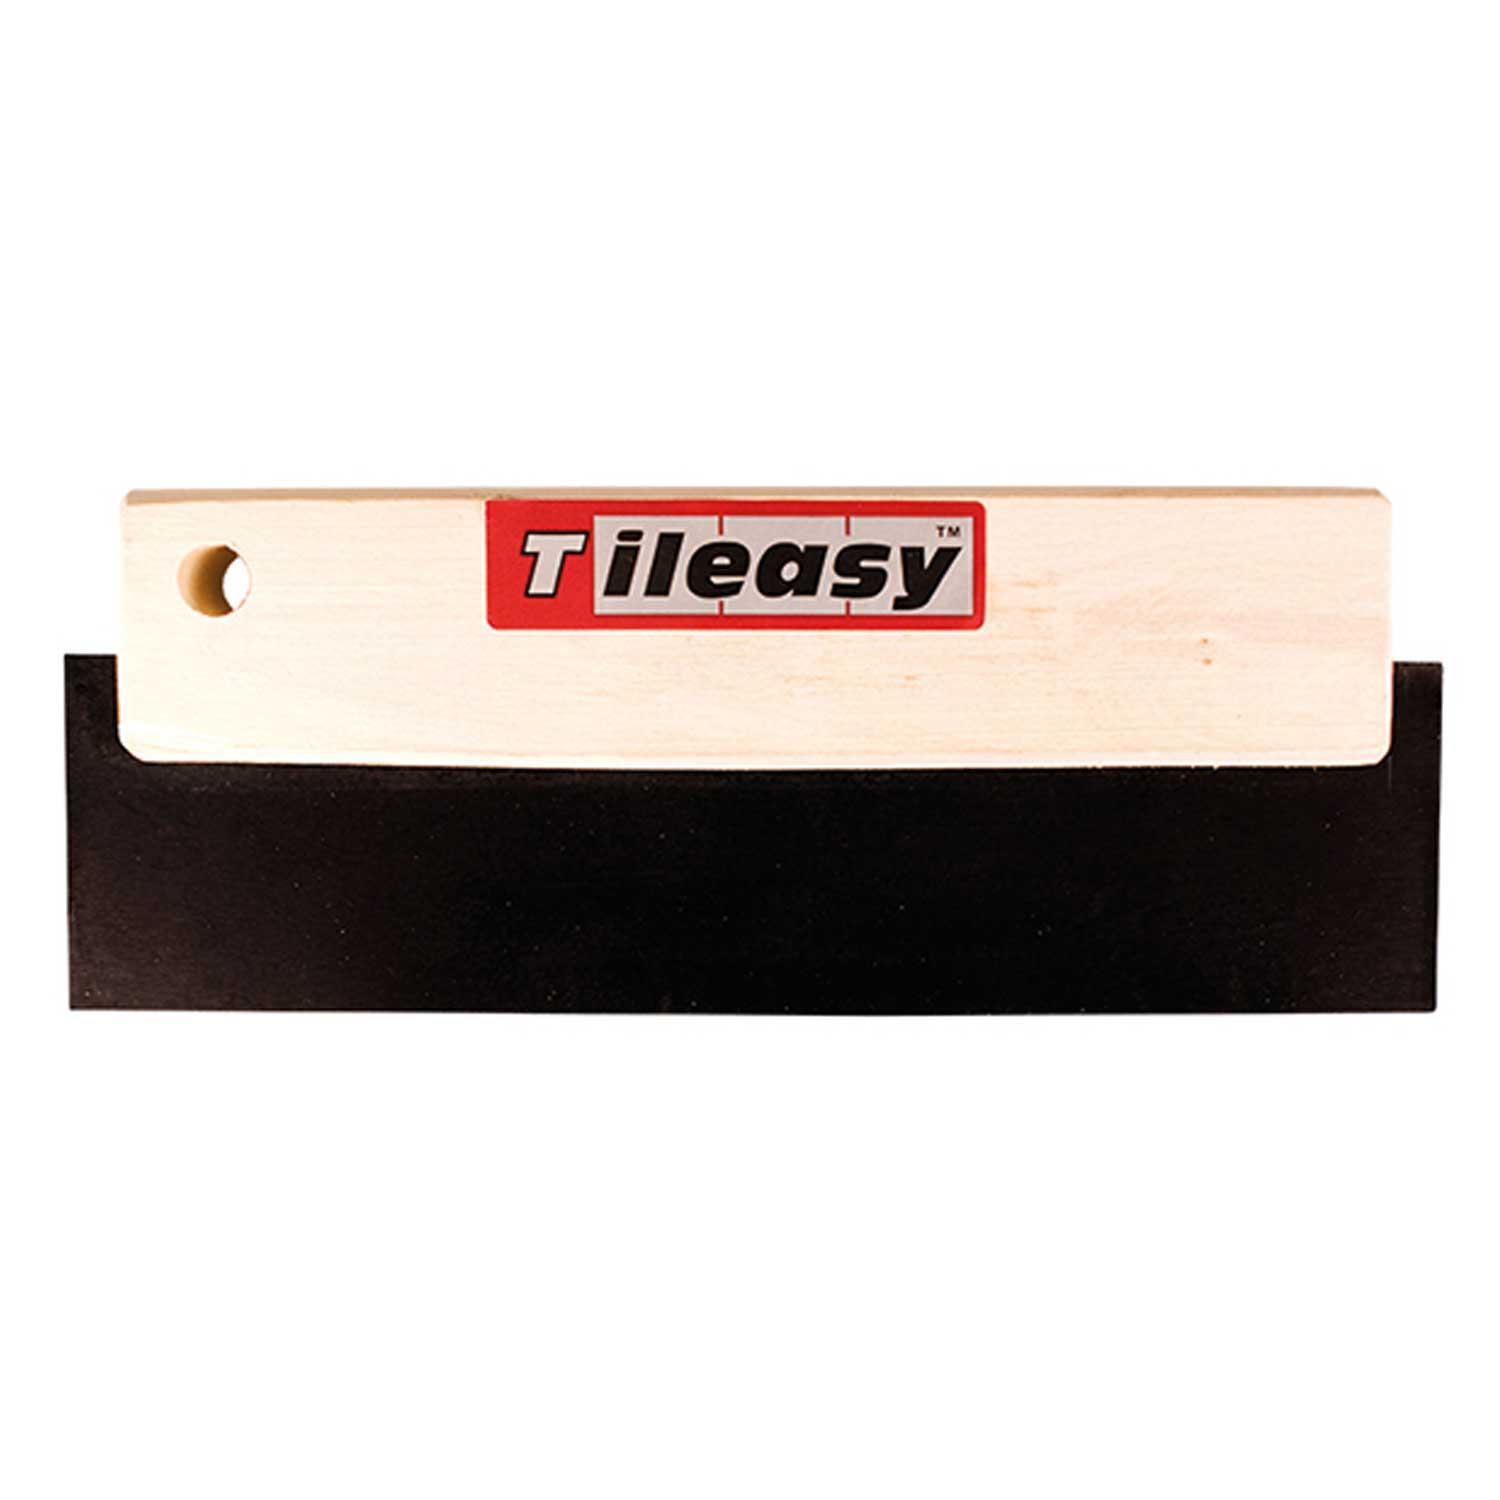 TIleasy Wooden Grouter